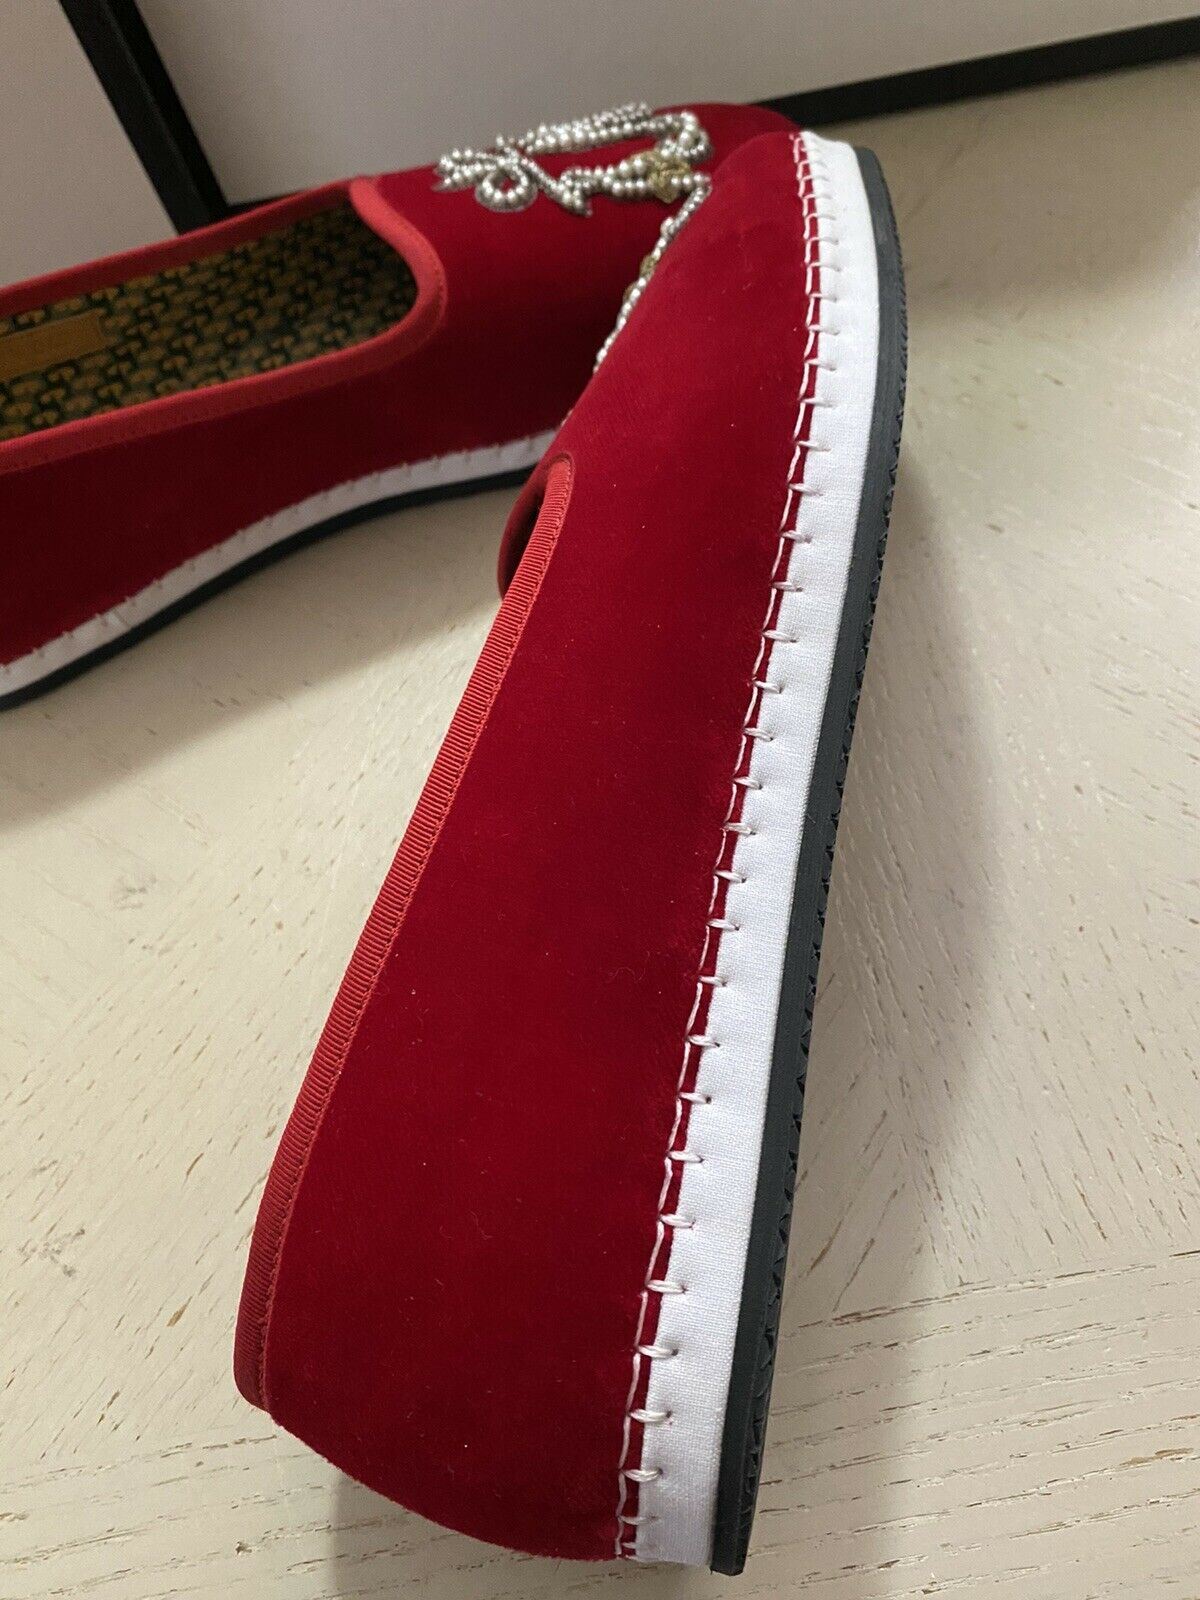 NIB 980 $ Gucci Herren-Loafer-Schuhe aus Samt, Rot, 7,5 US / 6,5 UK